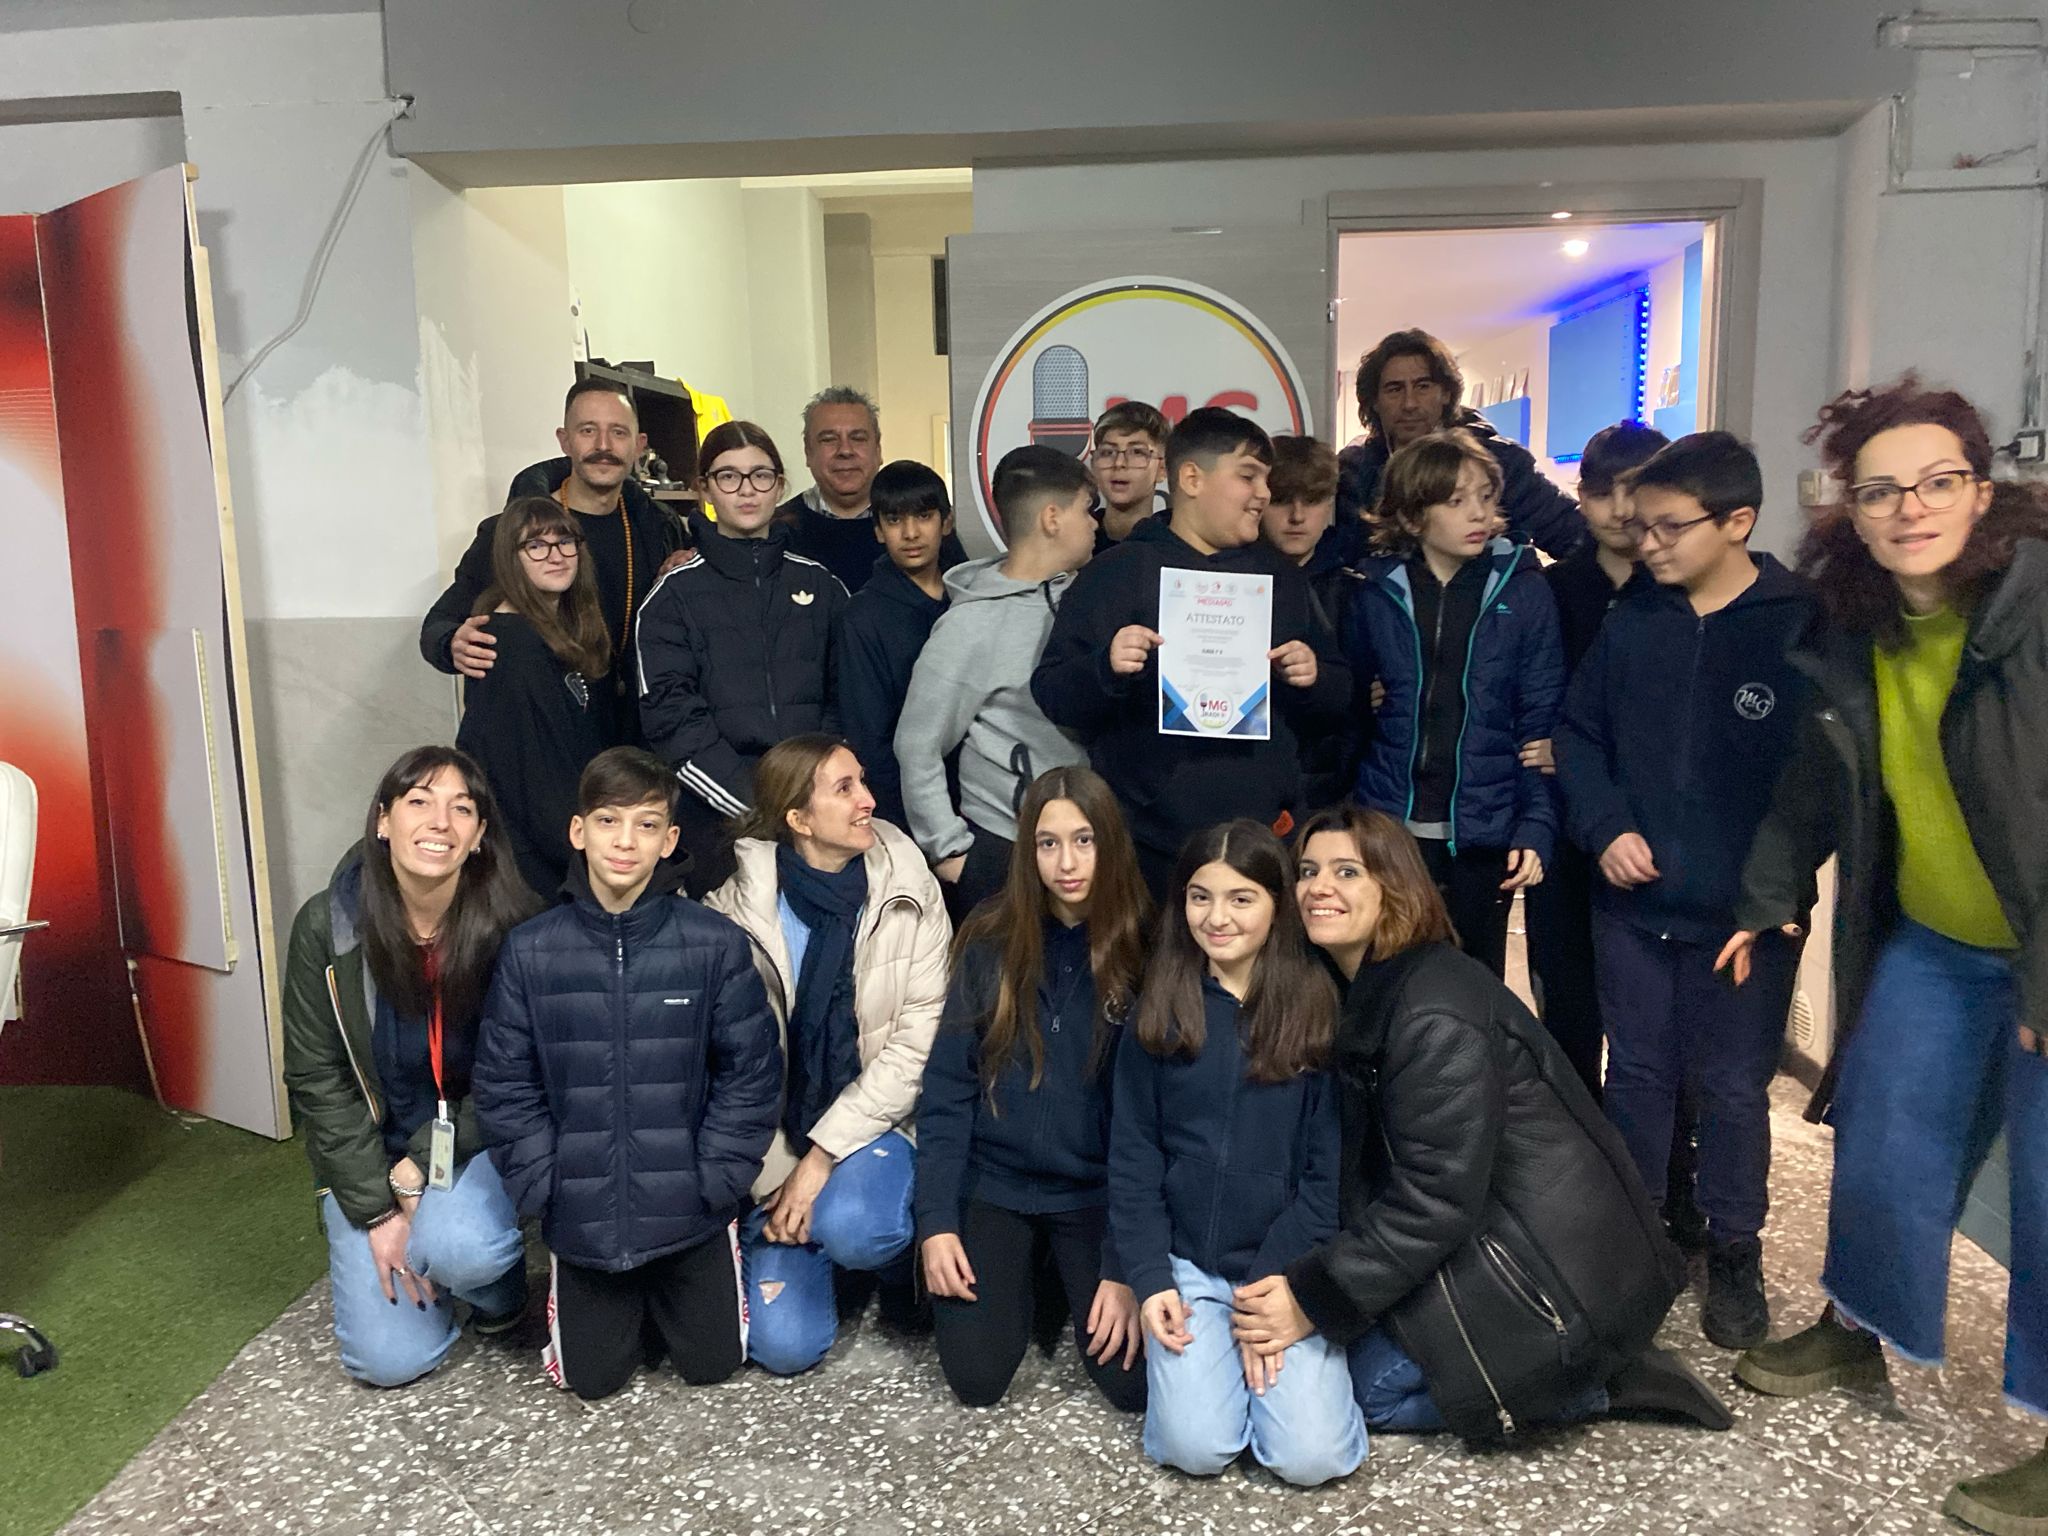 Successo “Radioso” per gli Studenti della Scuola Media MASSARI-GALILEO di Bari al Radio Video Day